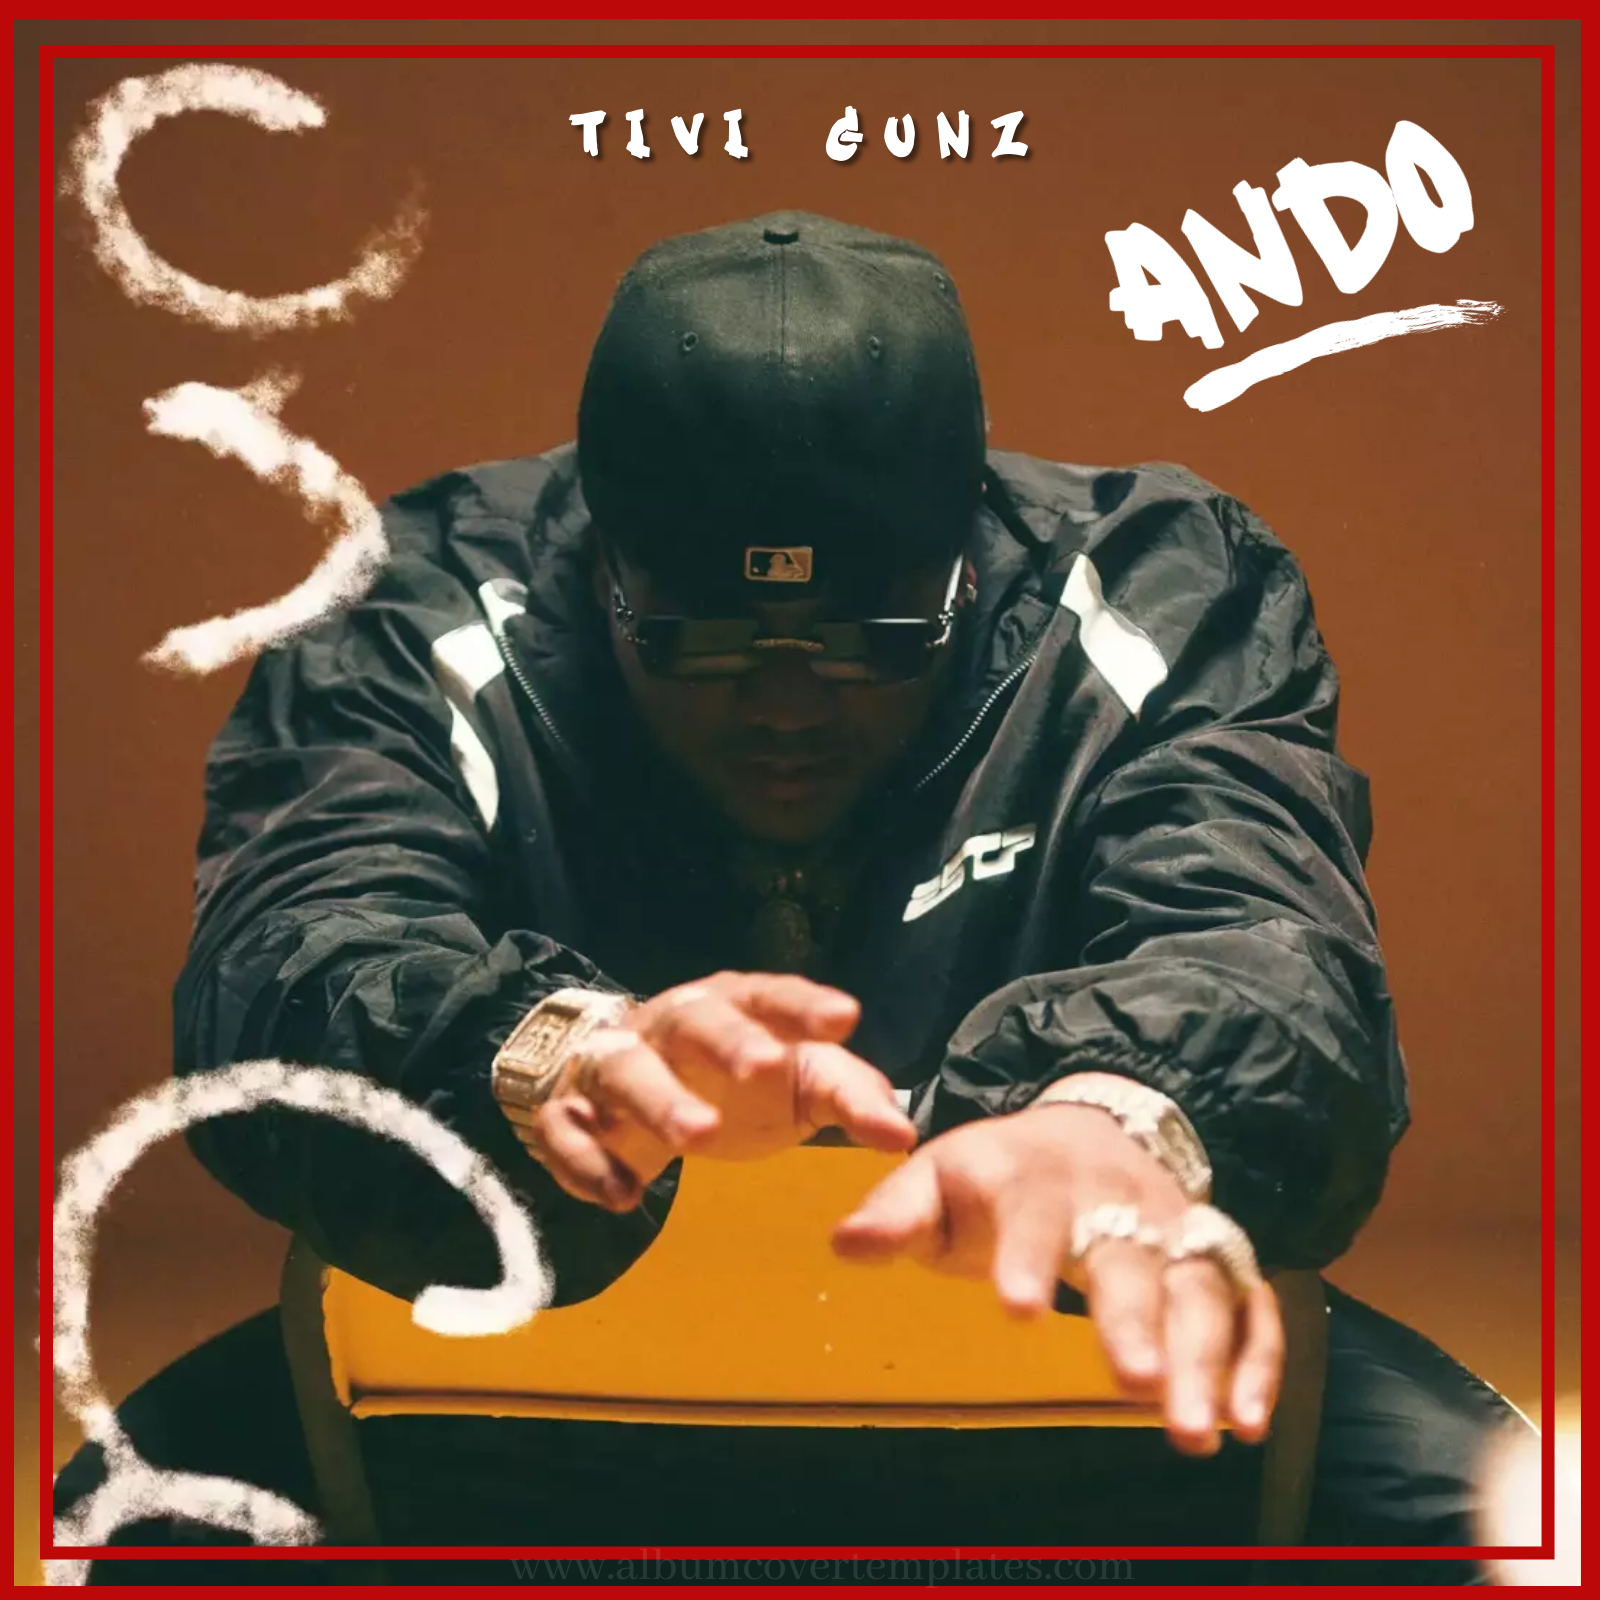 Tivi Gunz - Ando (Prod By Hopper Beatz)